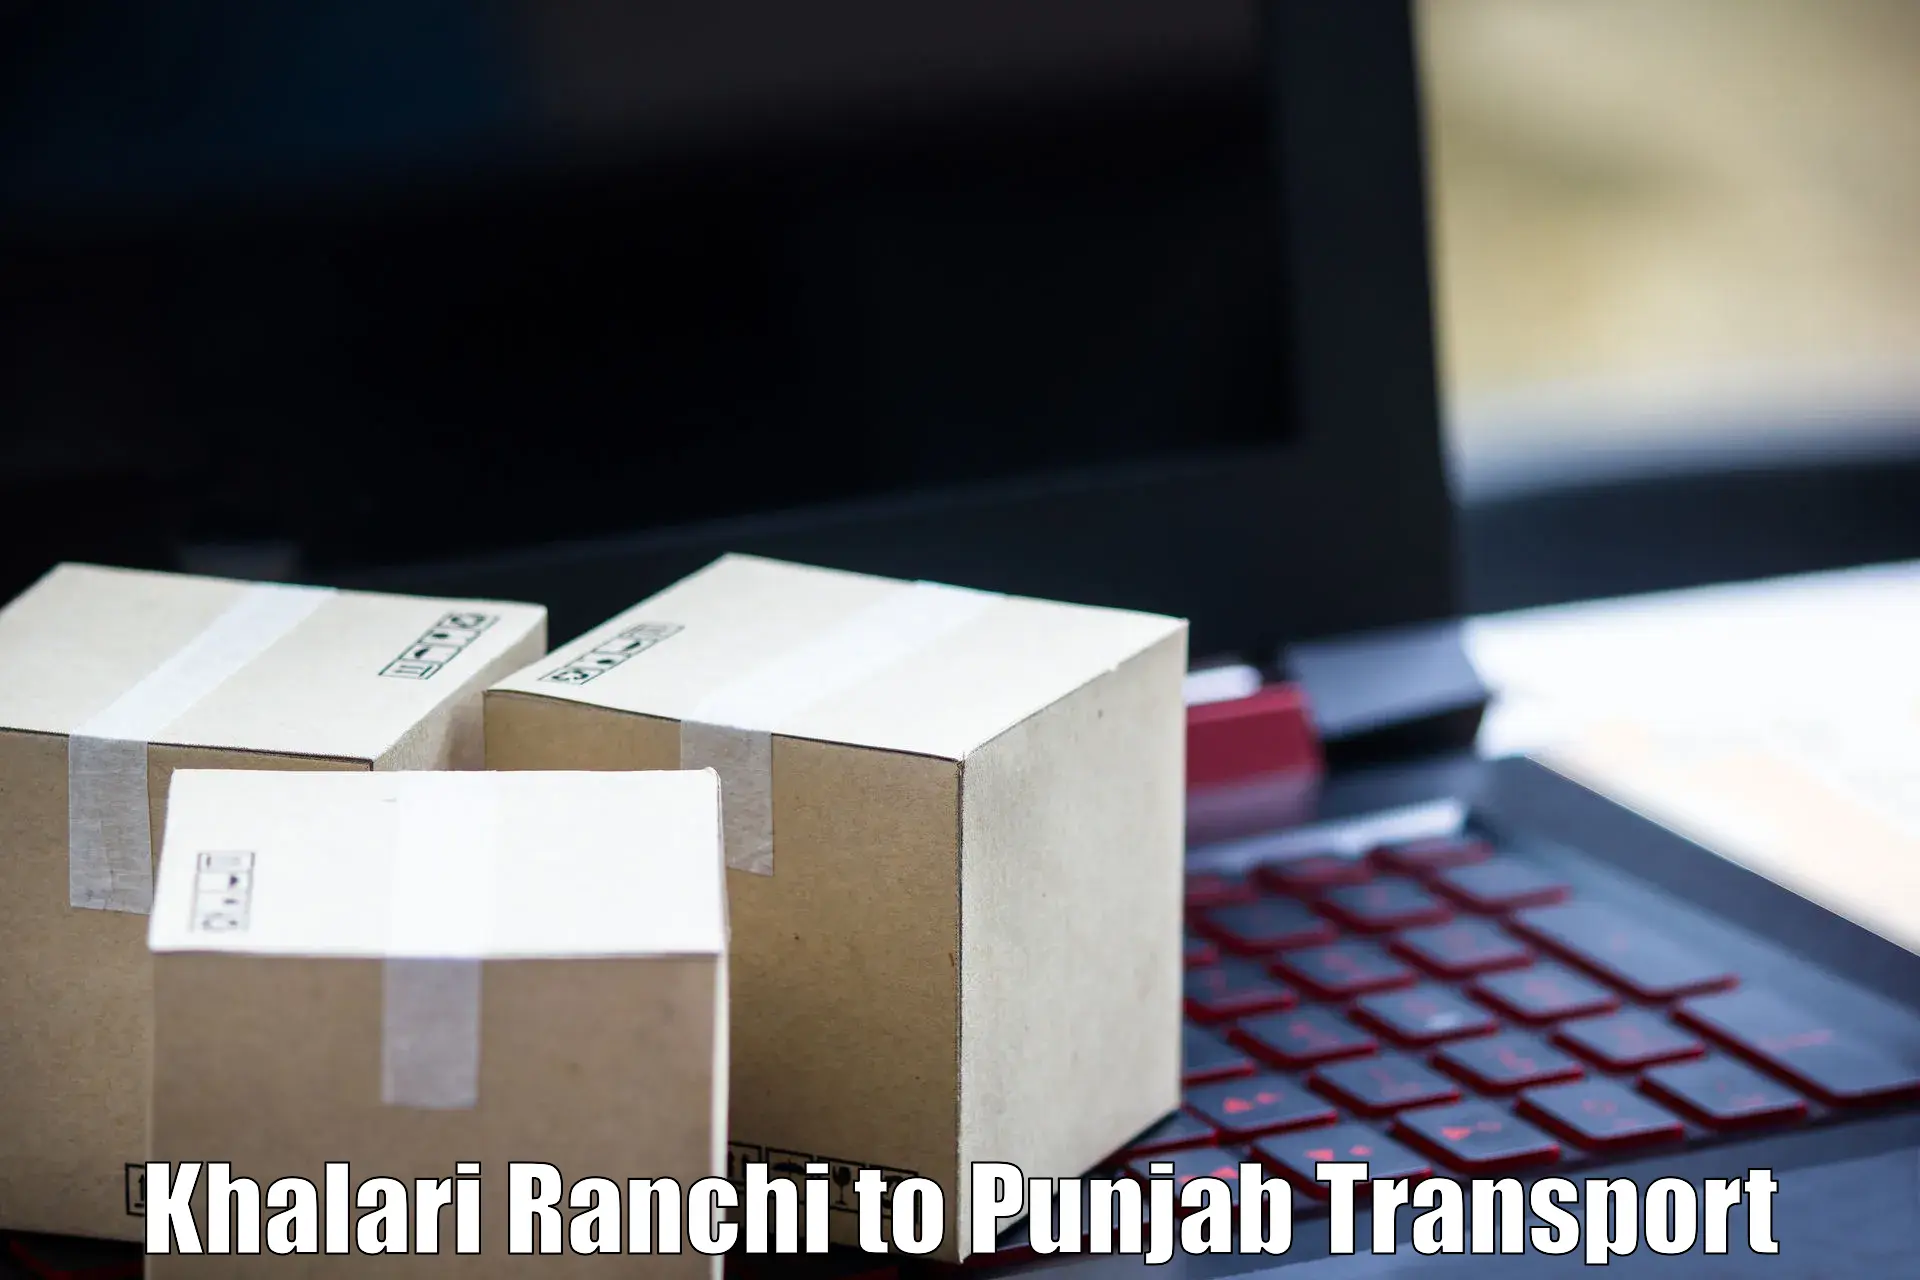 Transport shared services Khalari Ranchi to Hoshiarpur